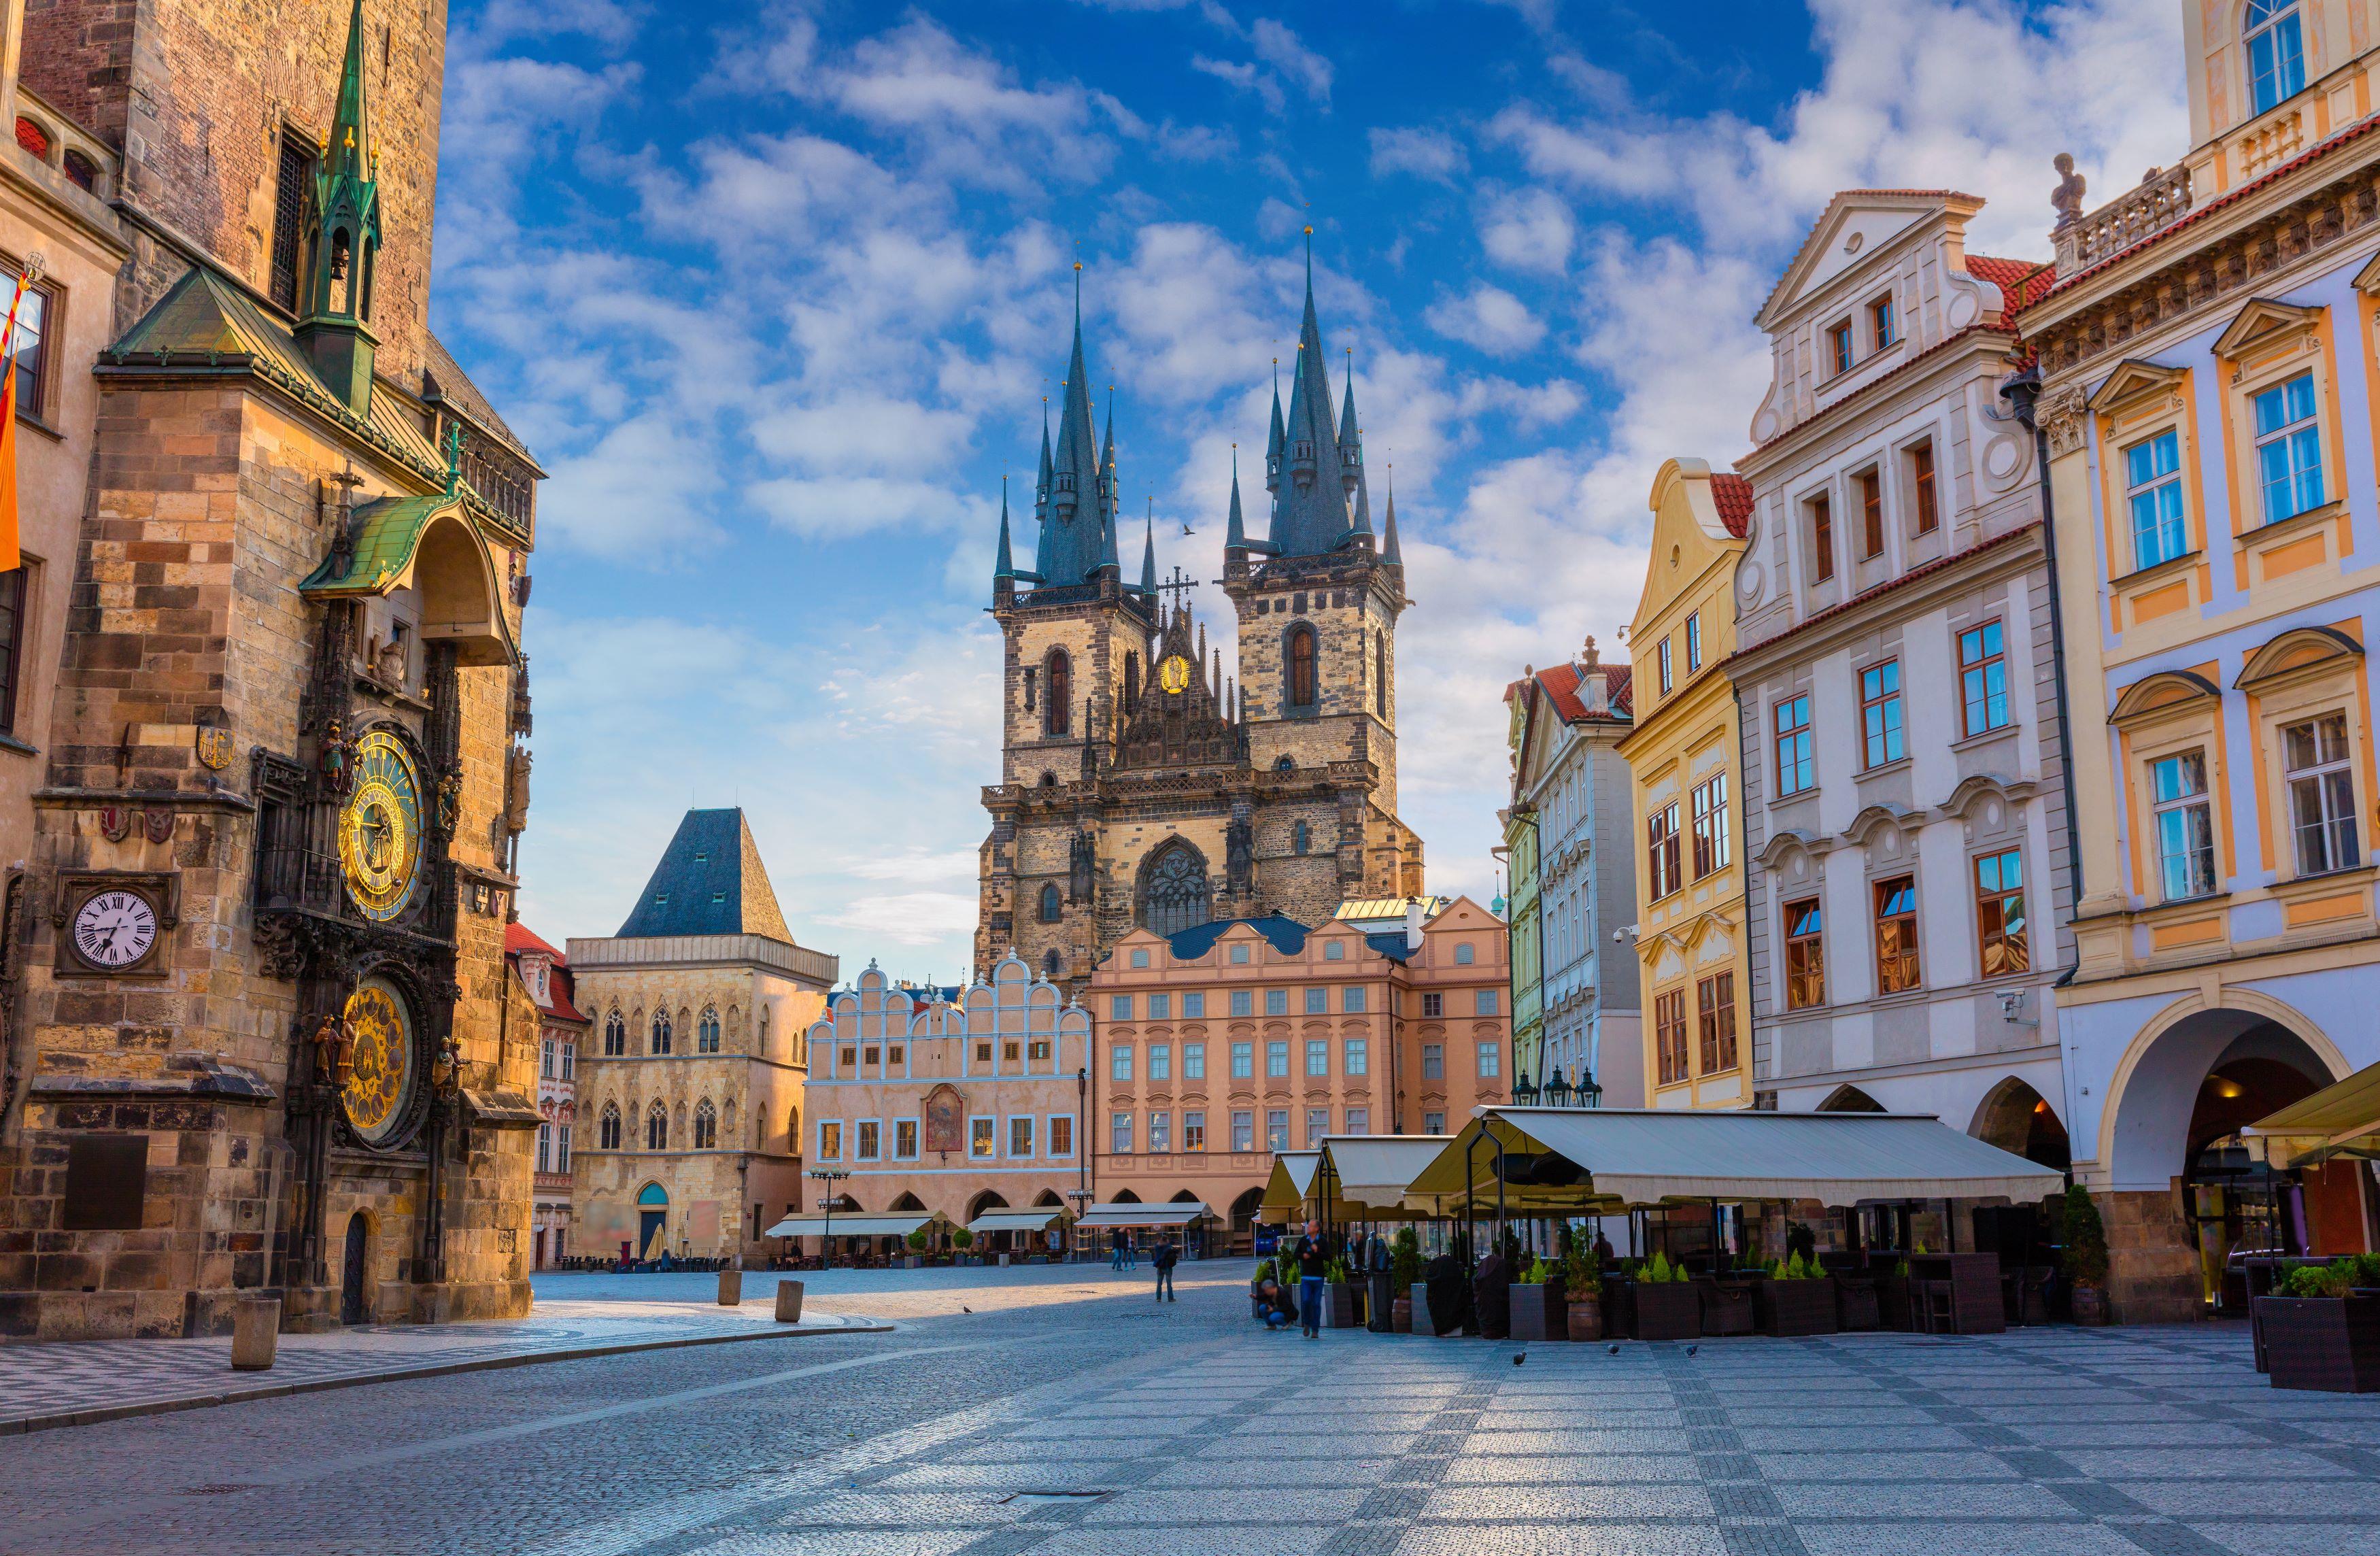 Prague: Old Town and Jewish District Walking Tour